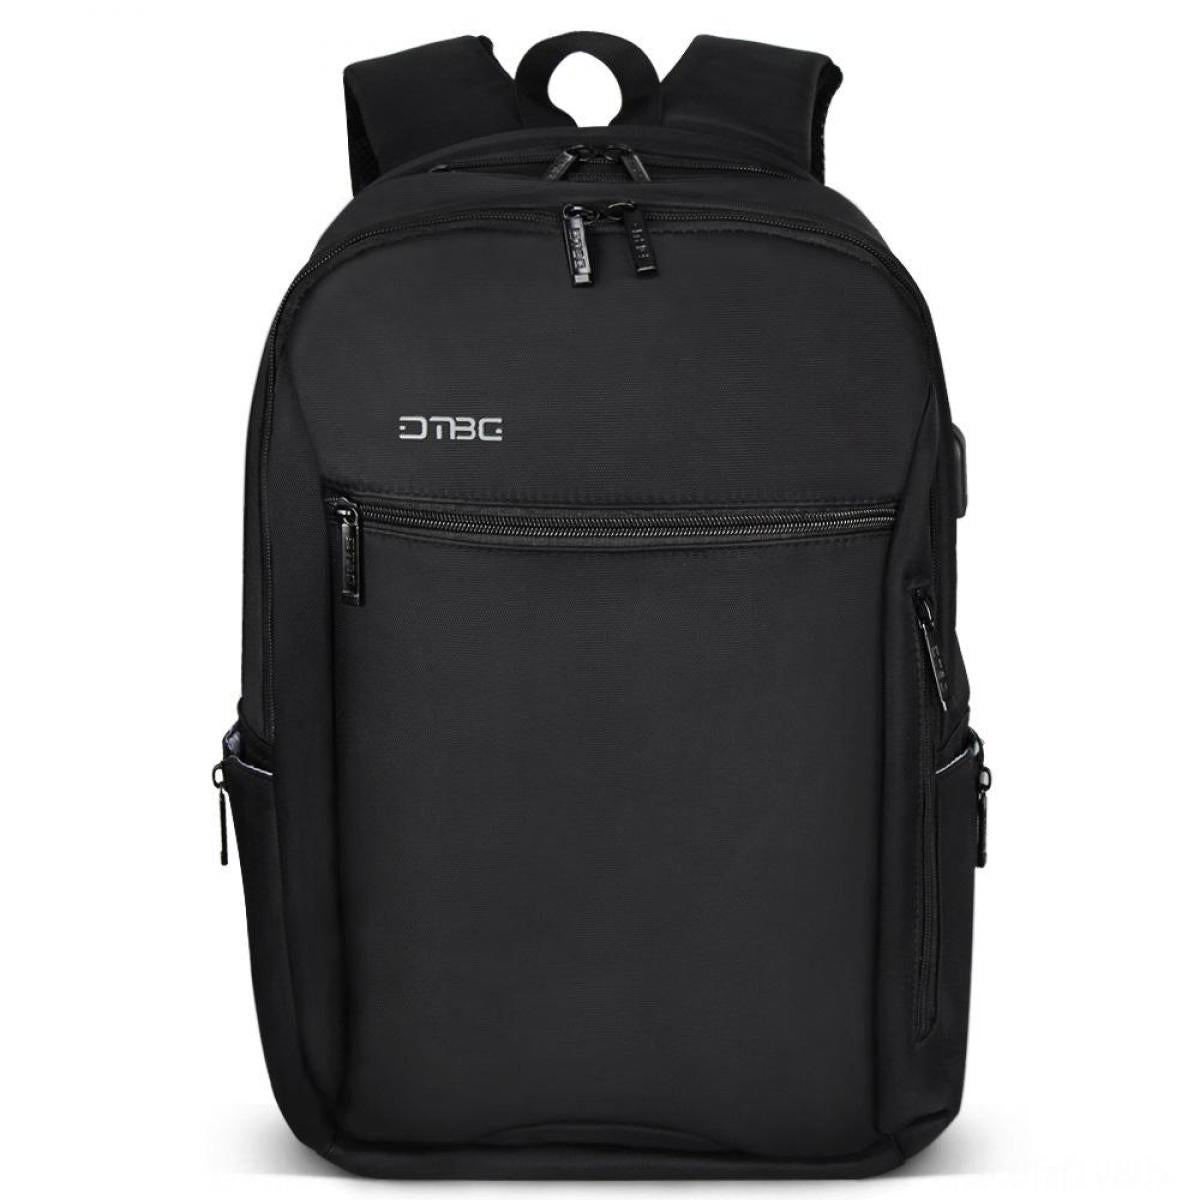 DTBG D8258W Laptop Bag Backpack 15.6